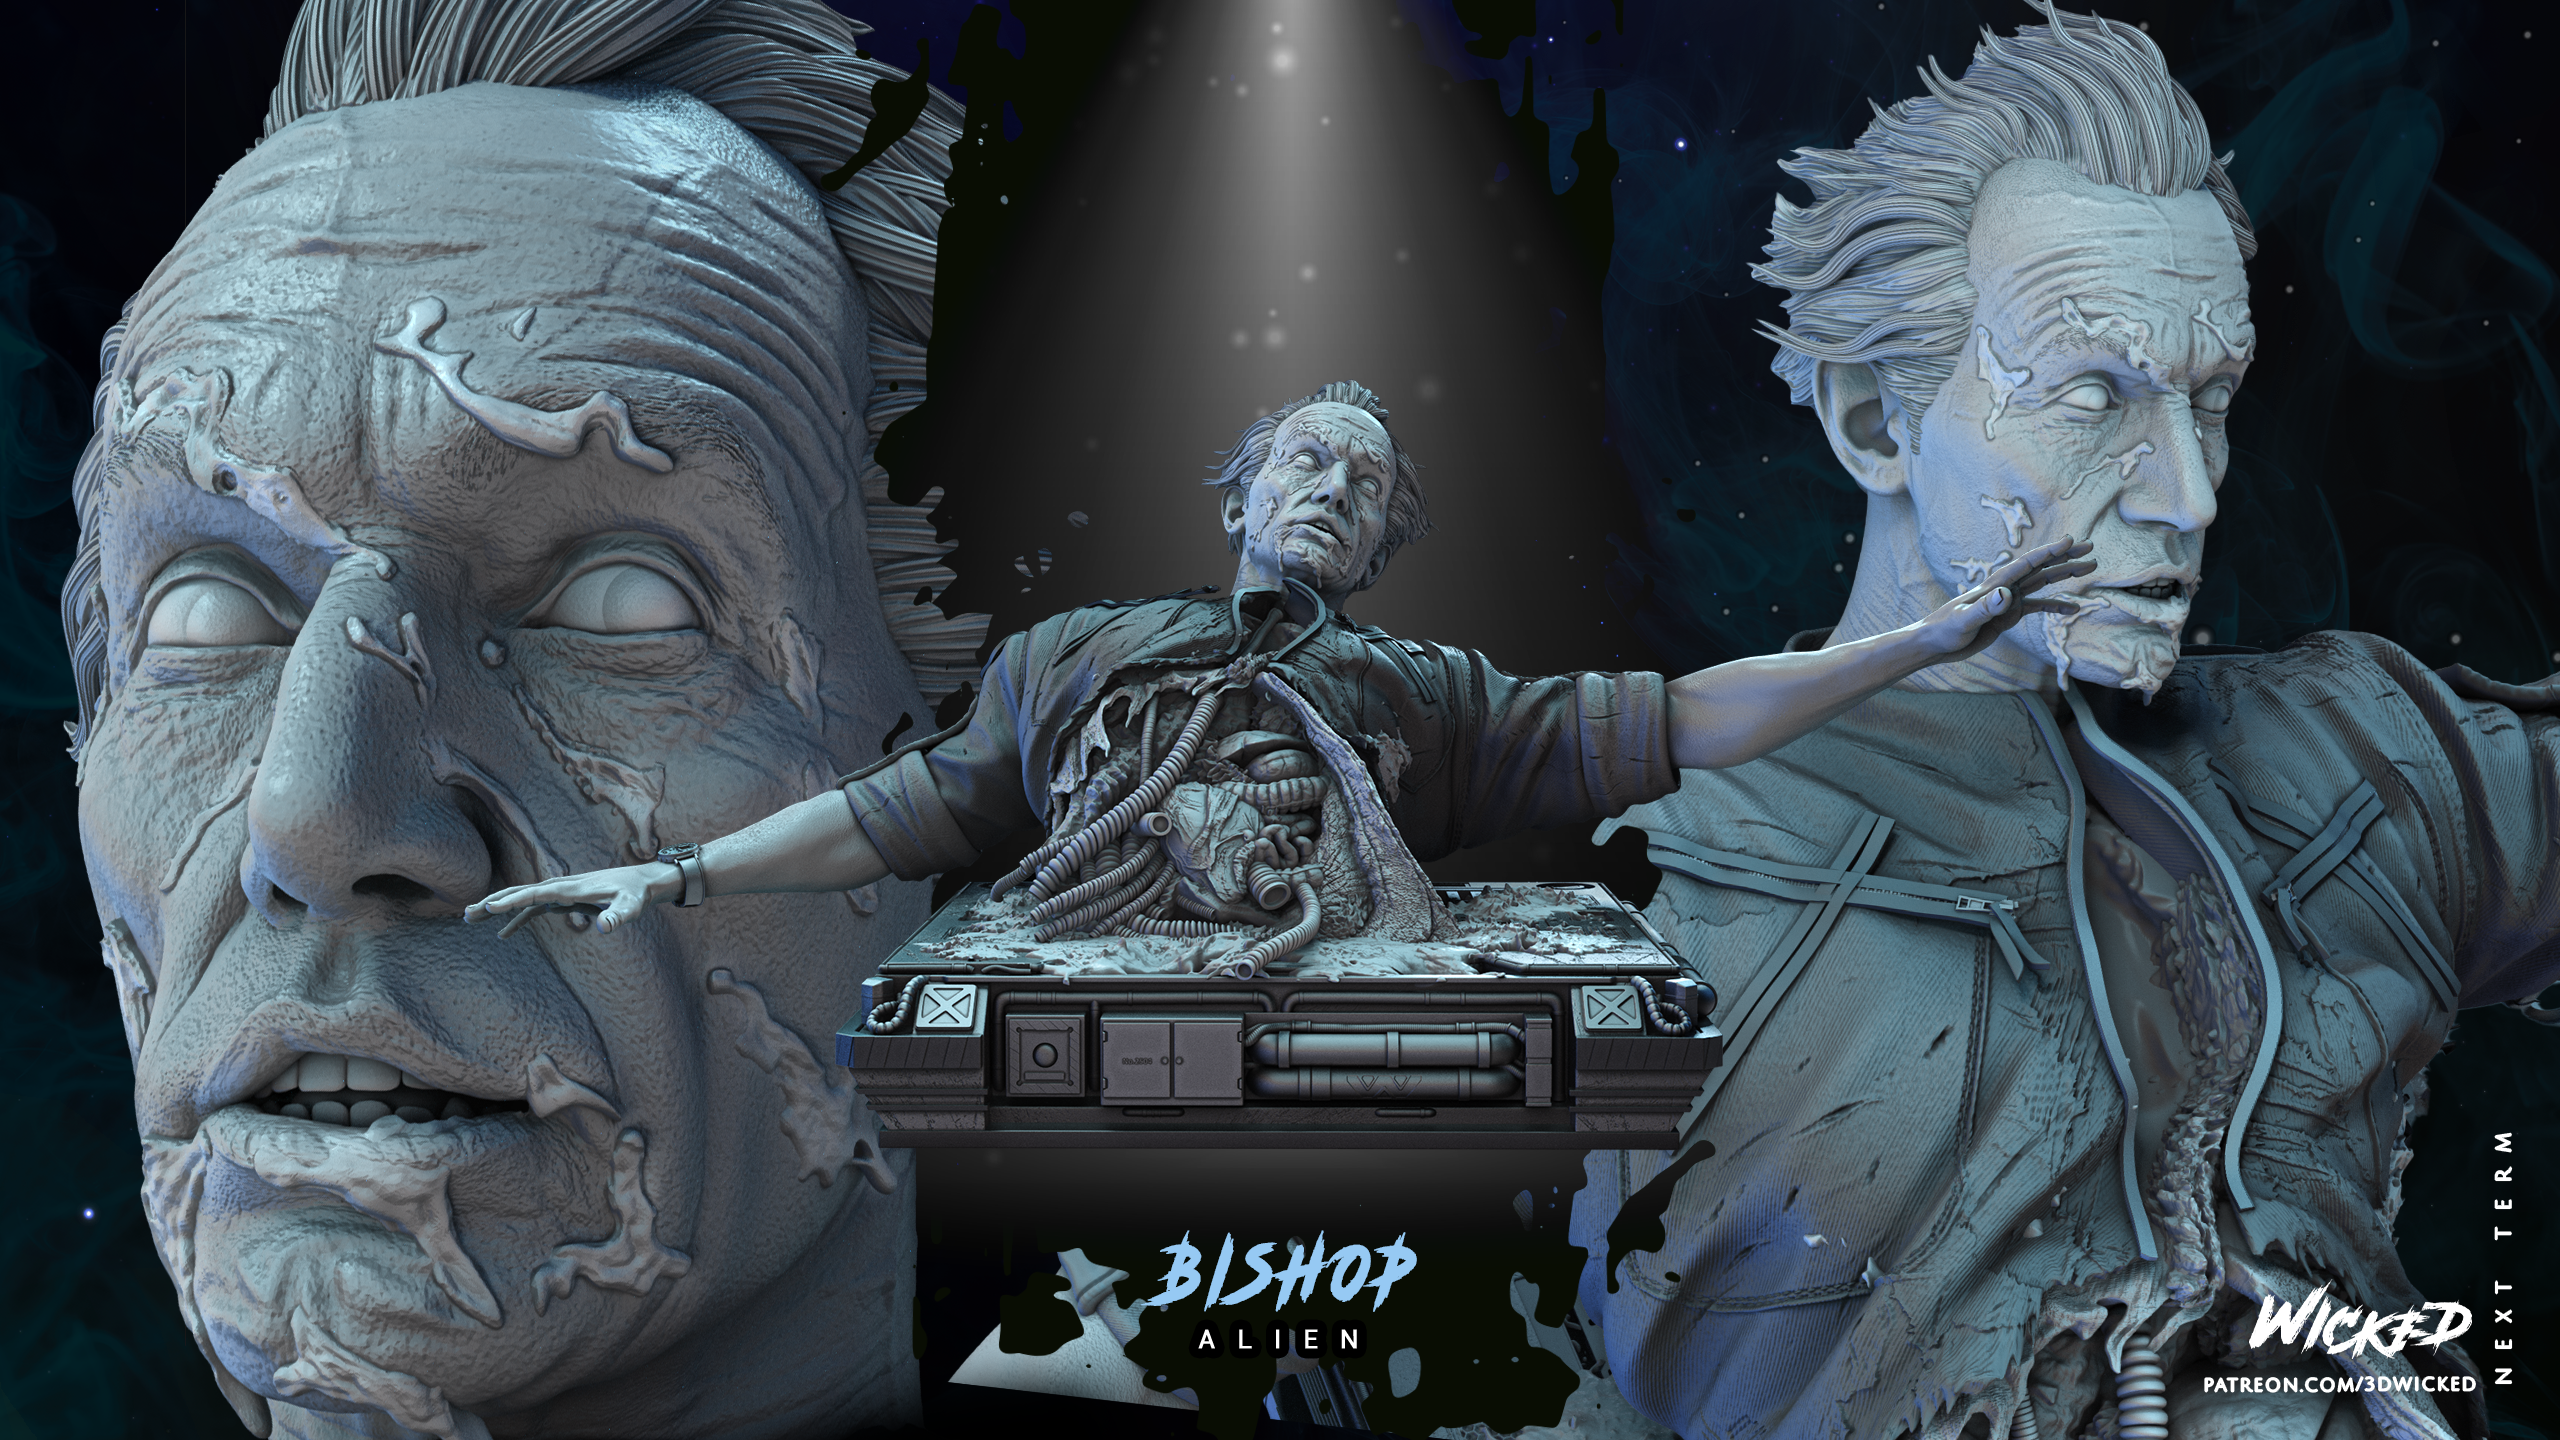 Bishop (Alien) Sculpture